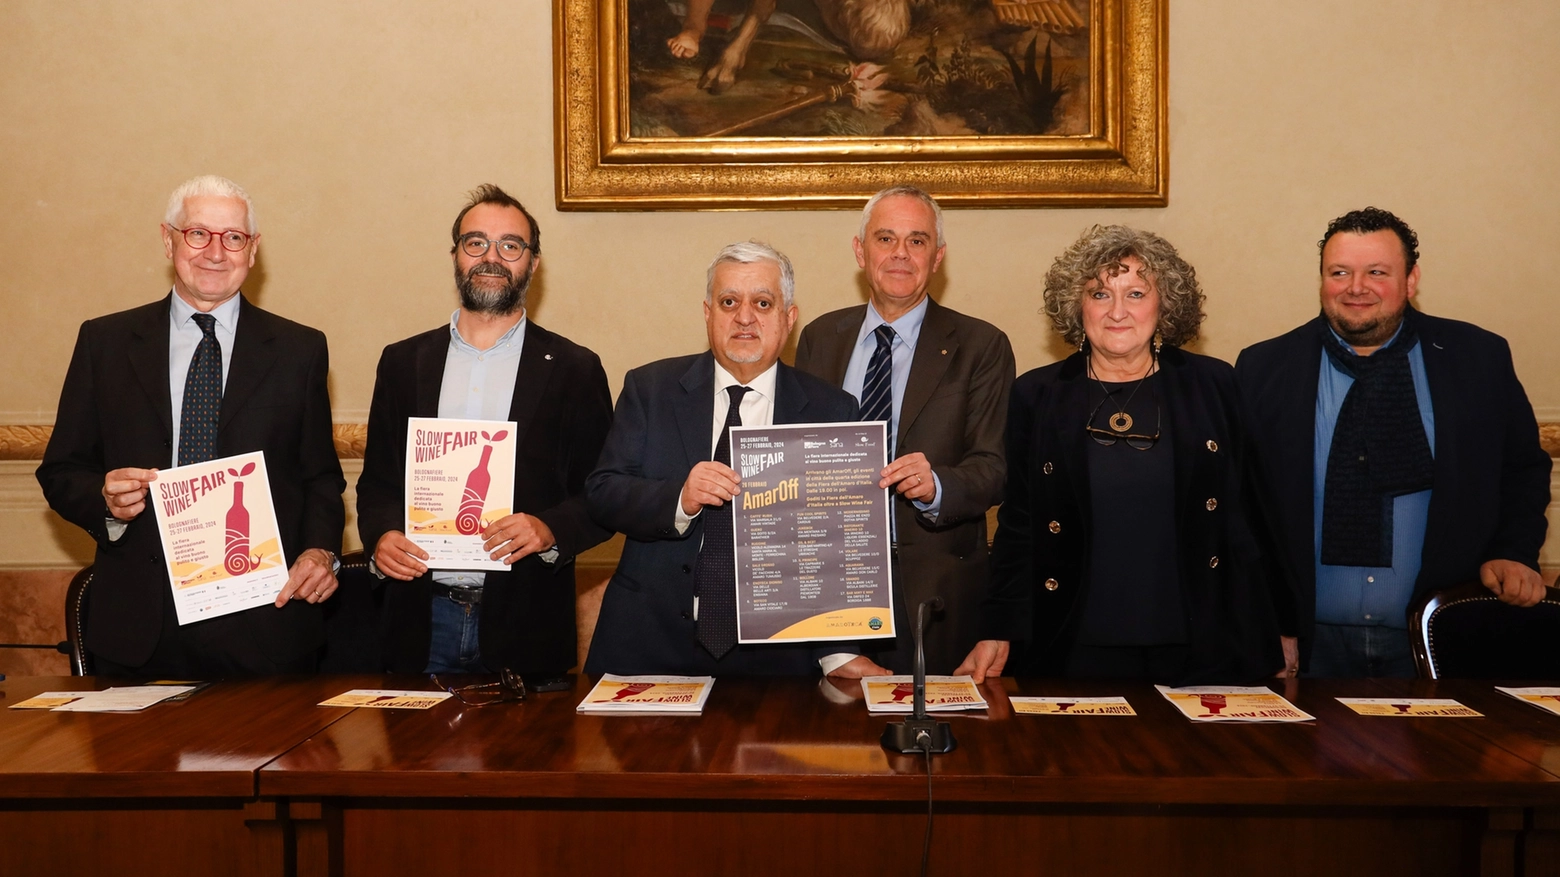 Organizzata da BolognaFiere e Sana, la manifestazione vuole rimarcare l’importanza del biologico, della qualità di produzione del vino e della sostenibilità. Tornano anche le iniziative diffuse sul territorio bolognese e regionale